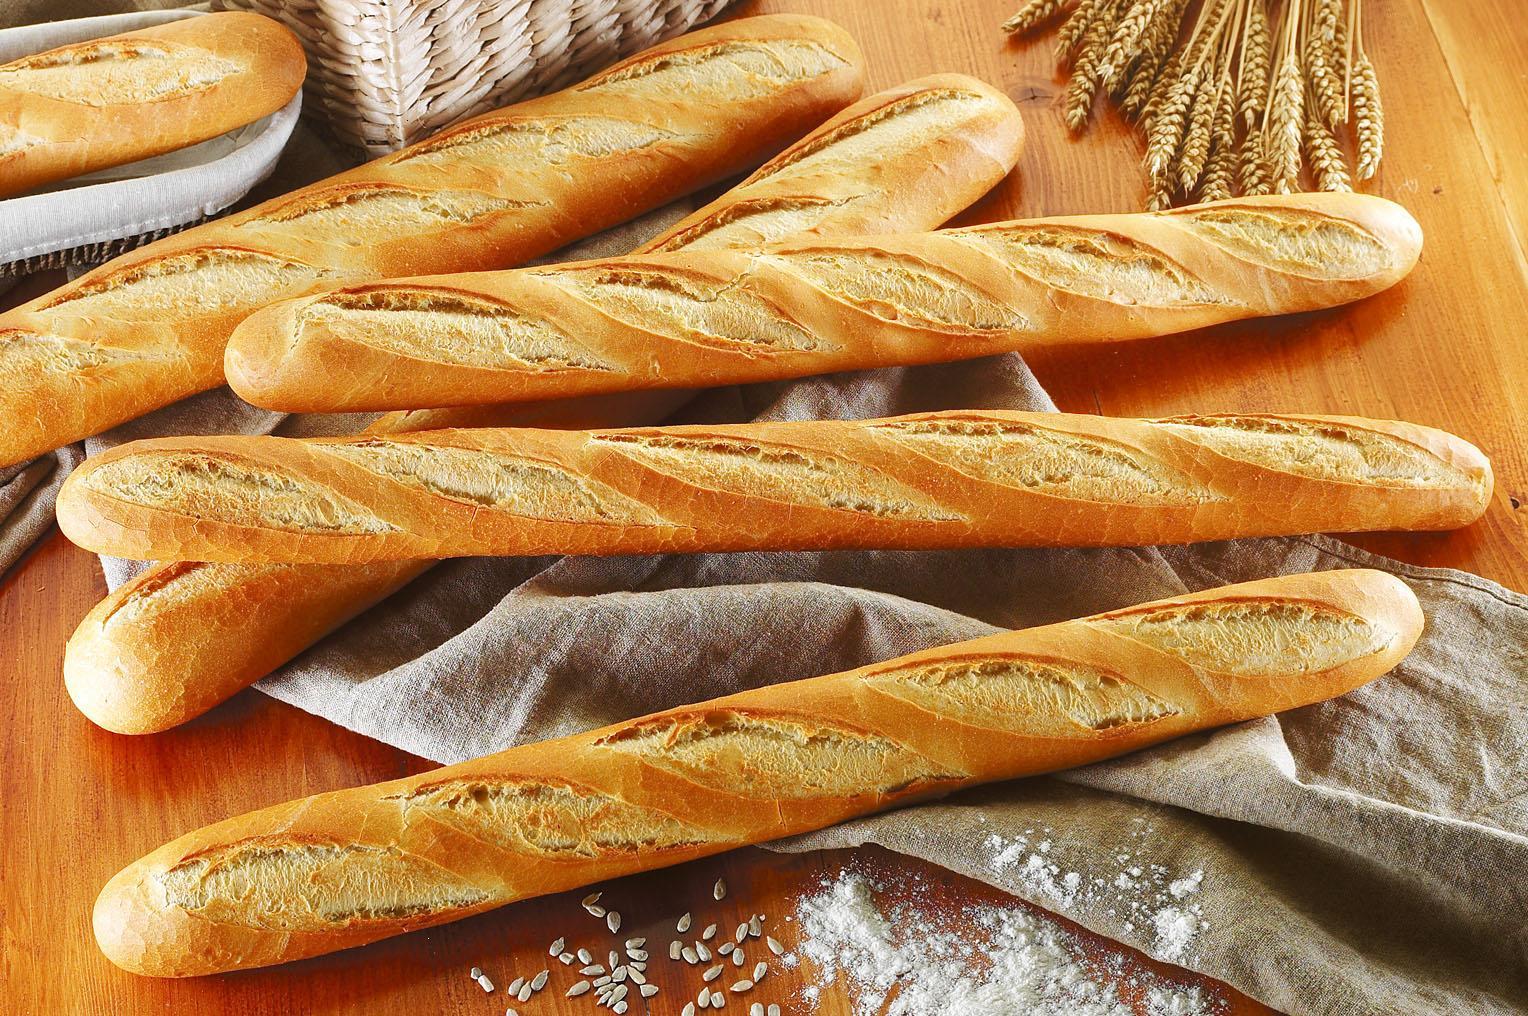 Trung bình trong 100g bánh mì trắng chứa hàm lượng calo là 264,6 kcal